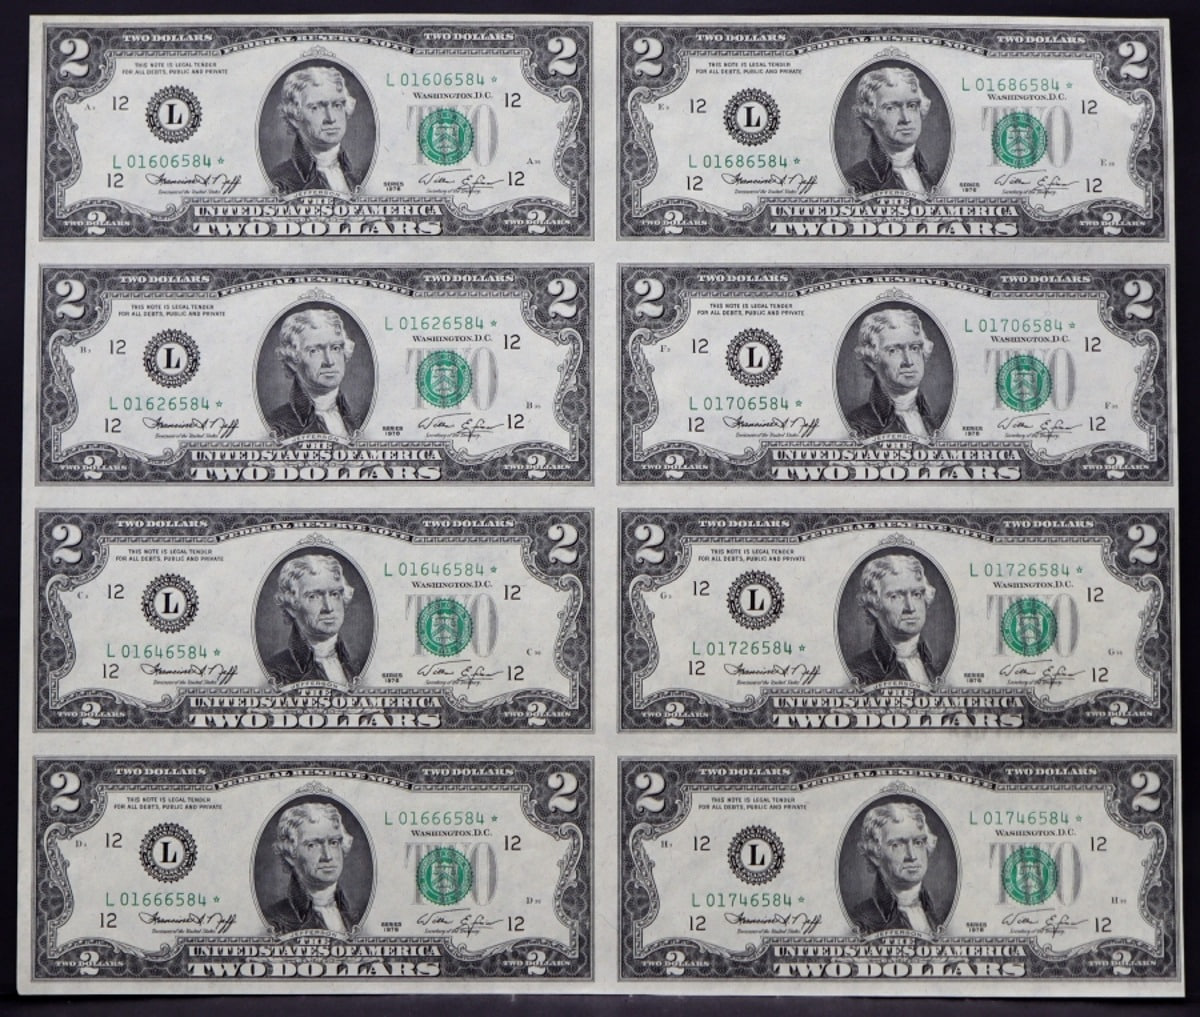 미국 1976년 토마슨 제퍼슨 행운의 2달러 - 스타 노트 (보충권)  8매 연결권 언컷시트